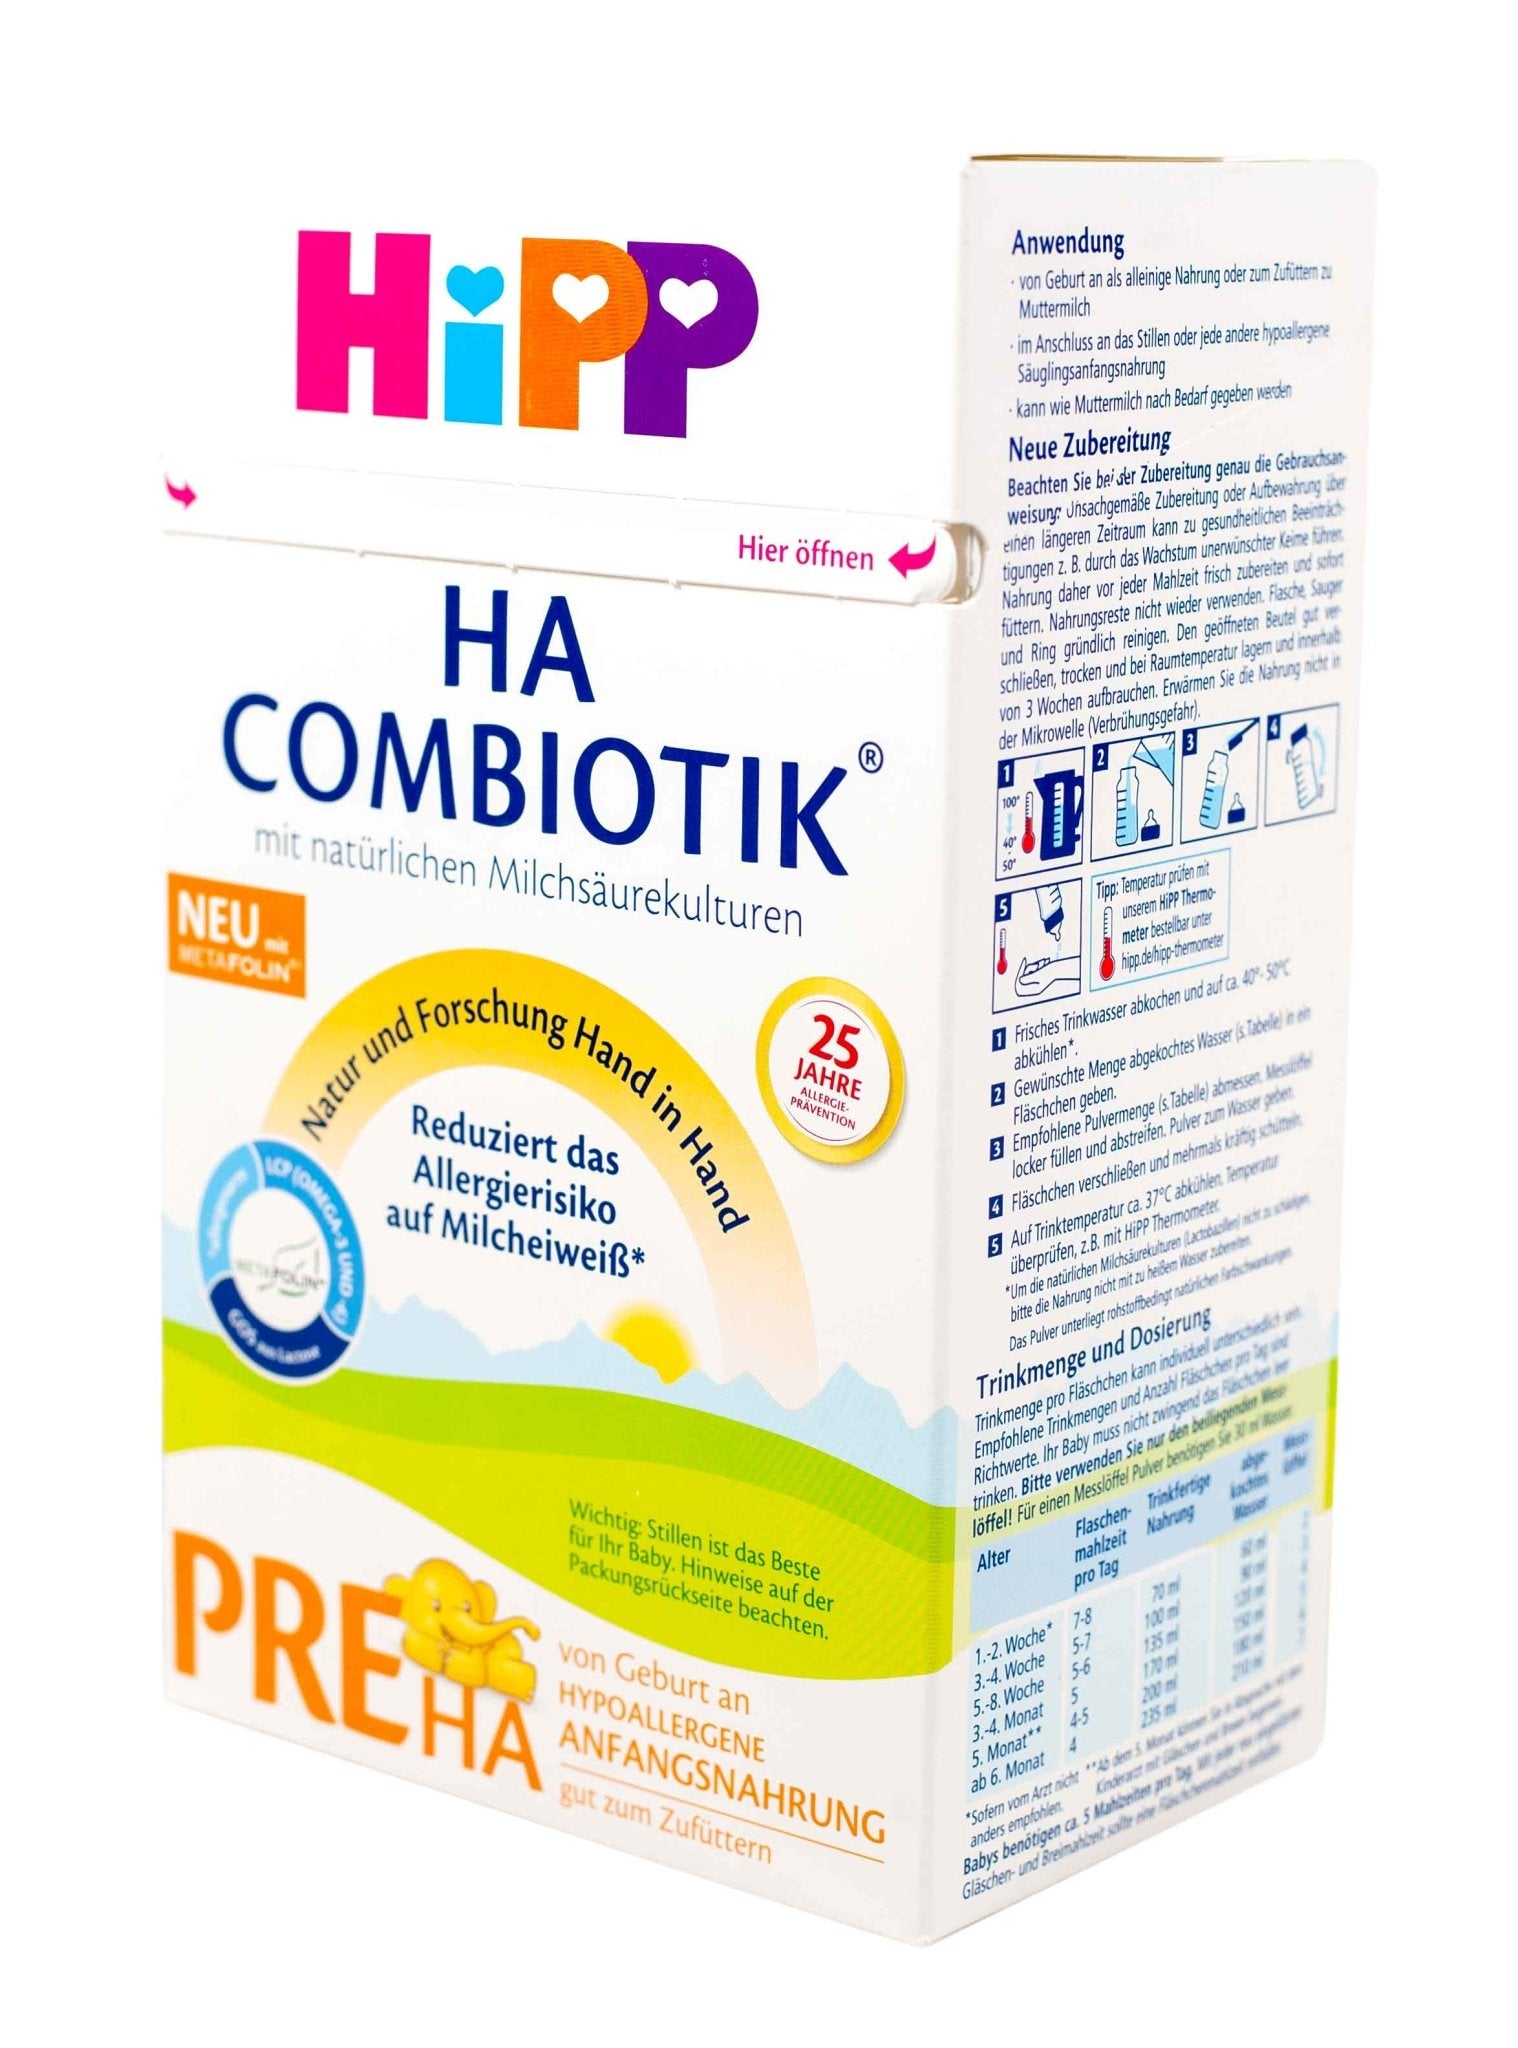 HiPP Combiotic Stage PRE Formula 